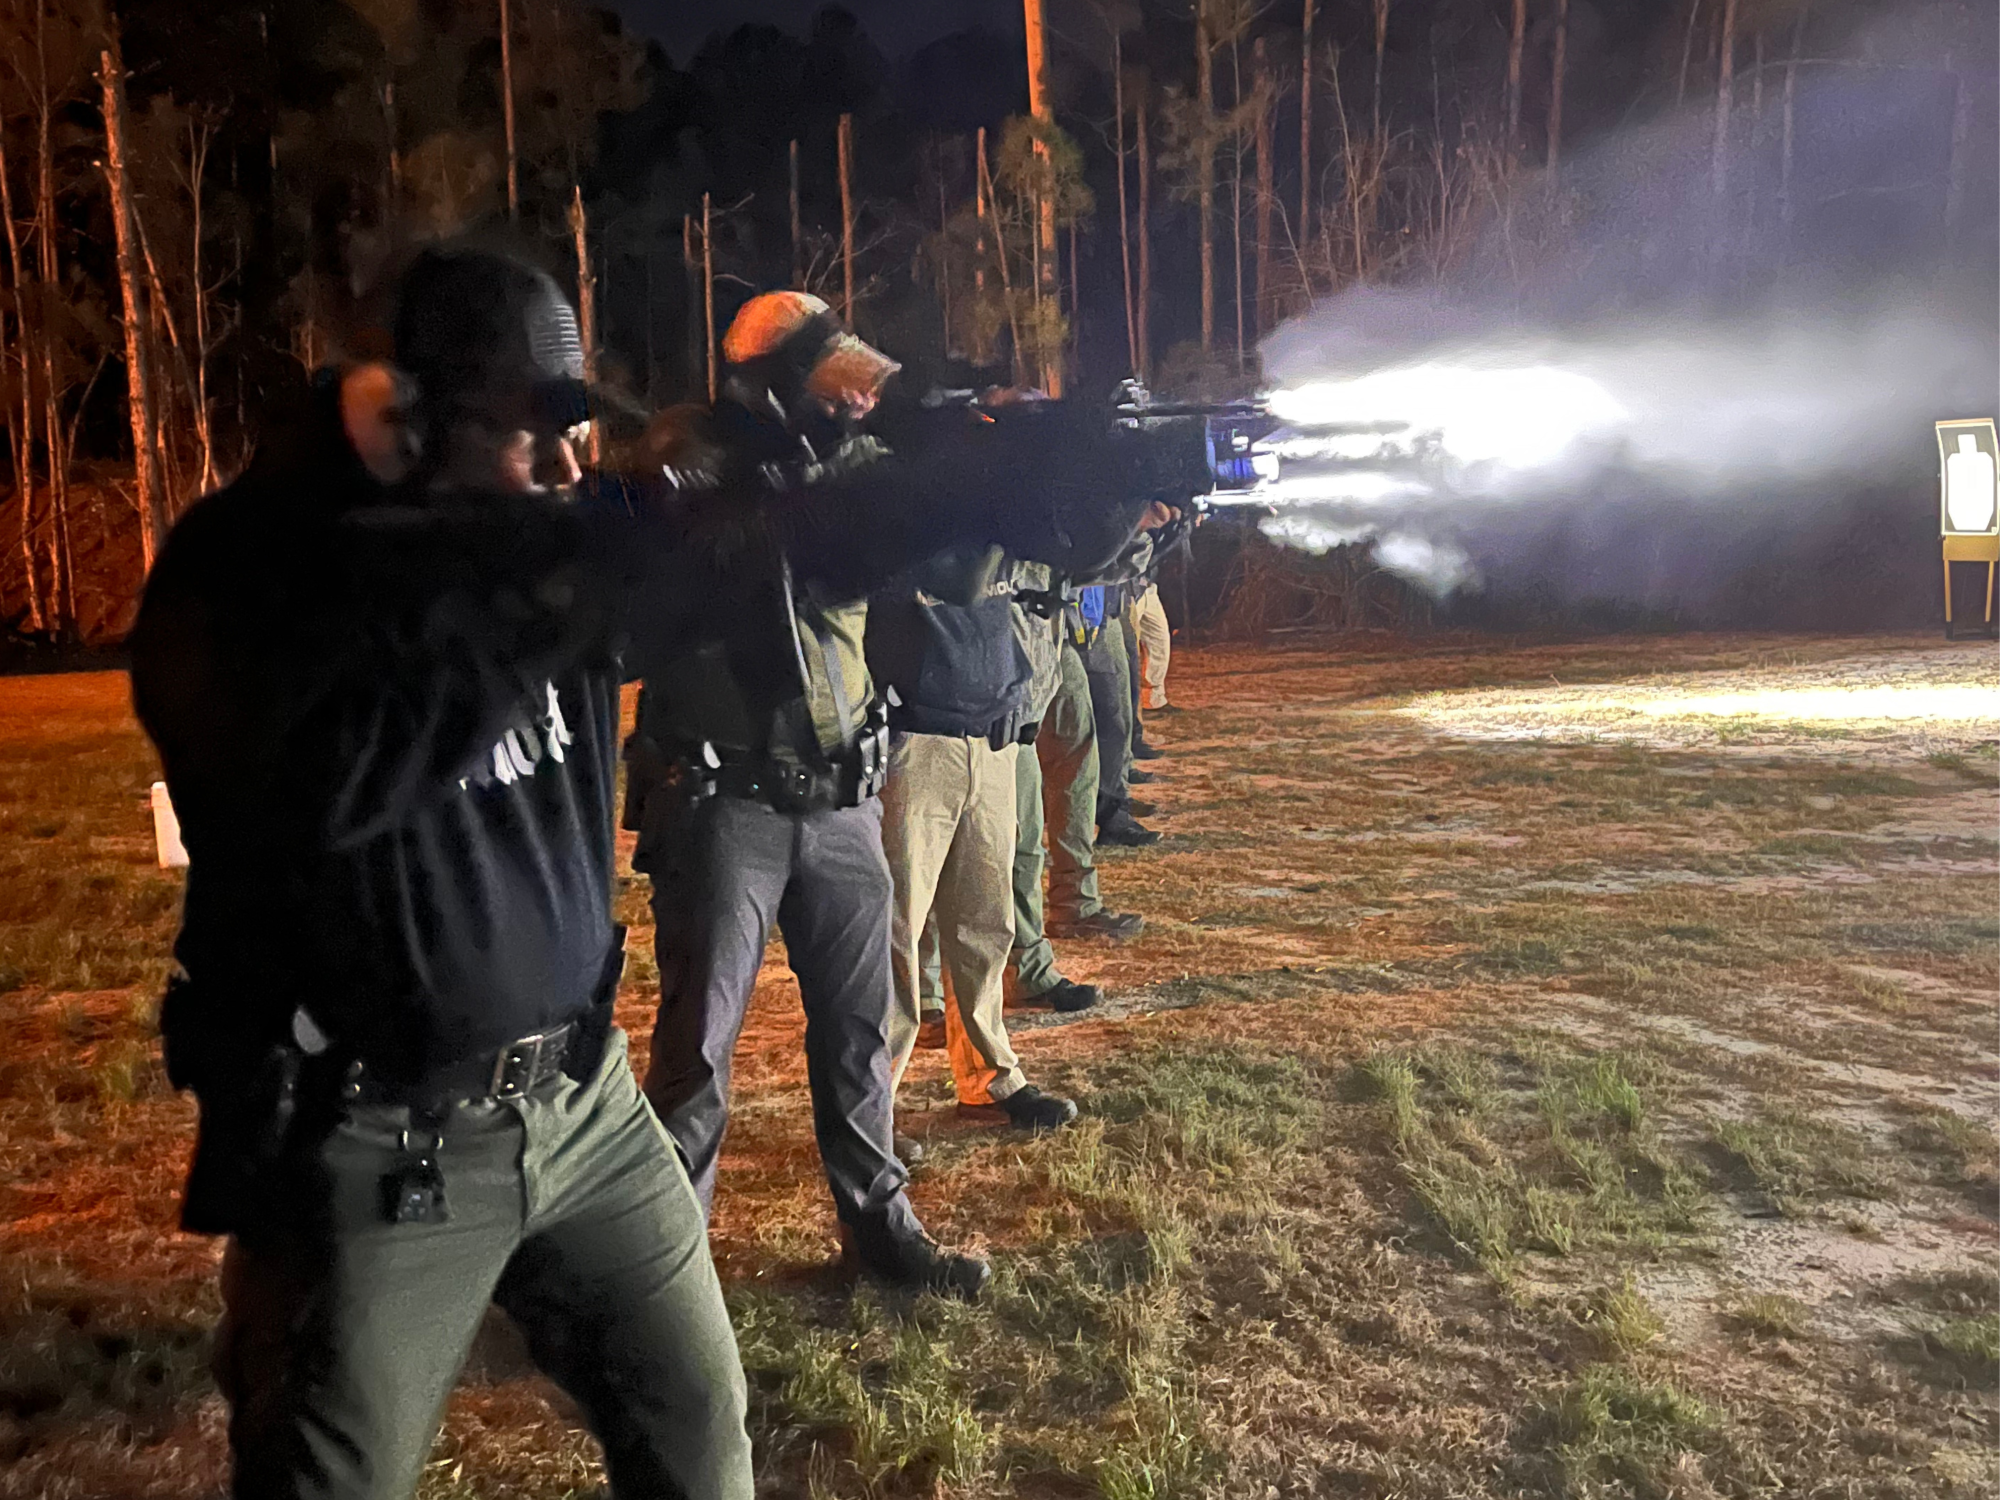 Police training at firing range